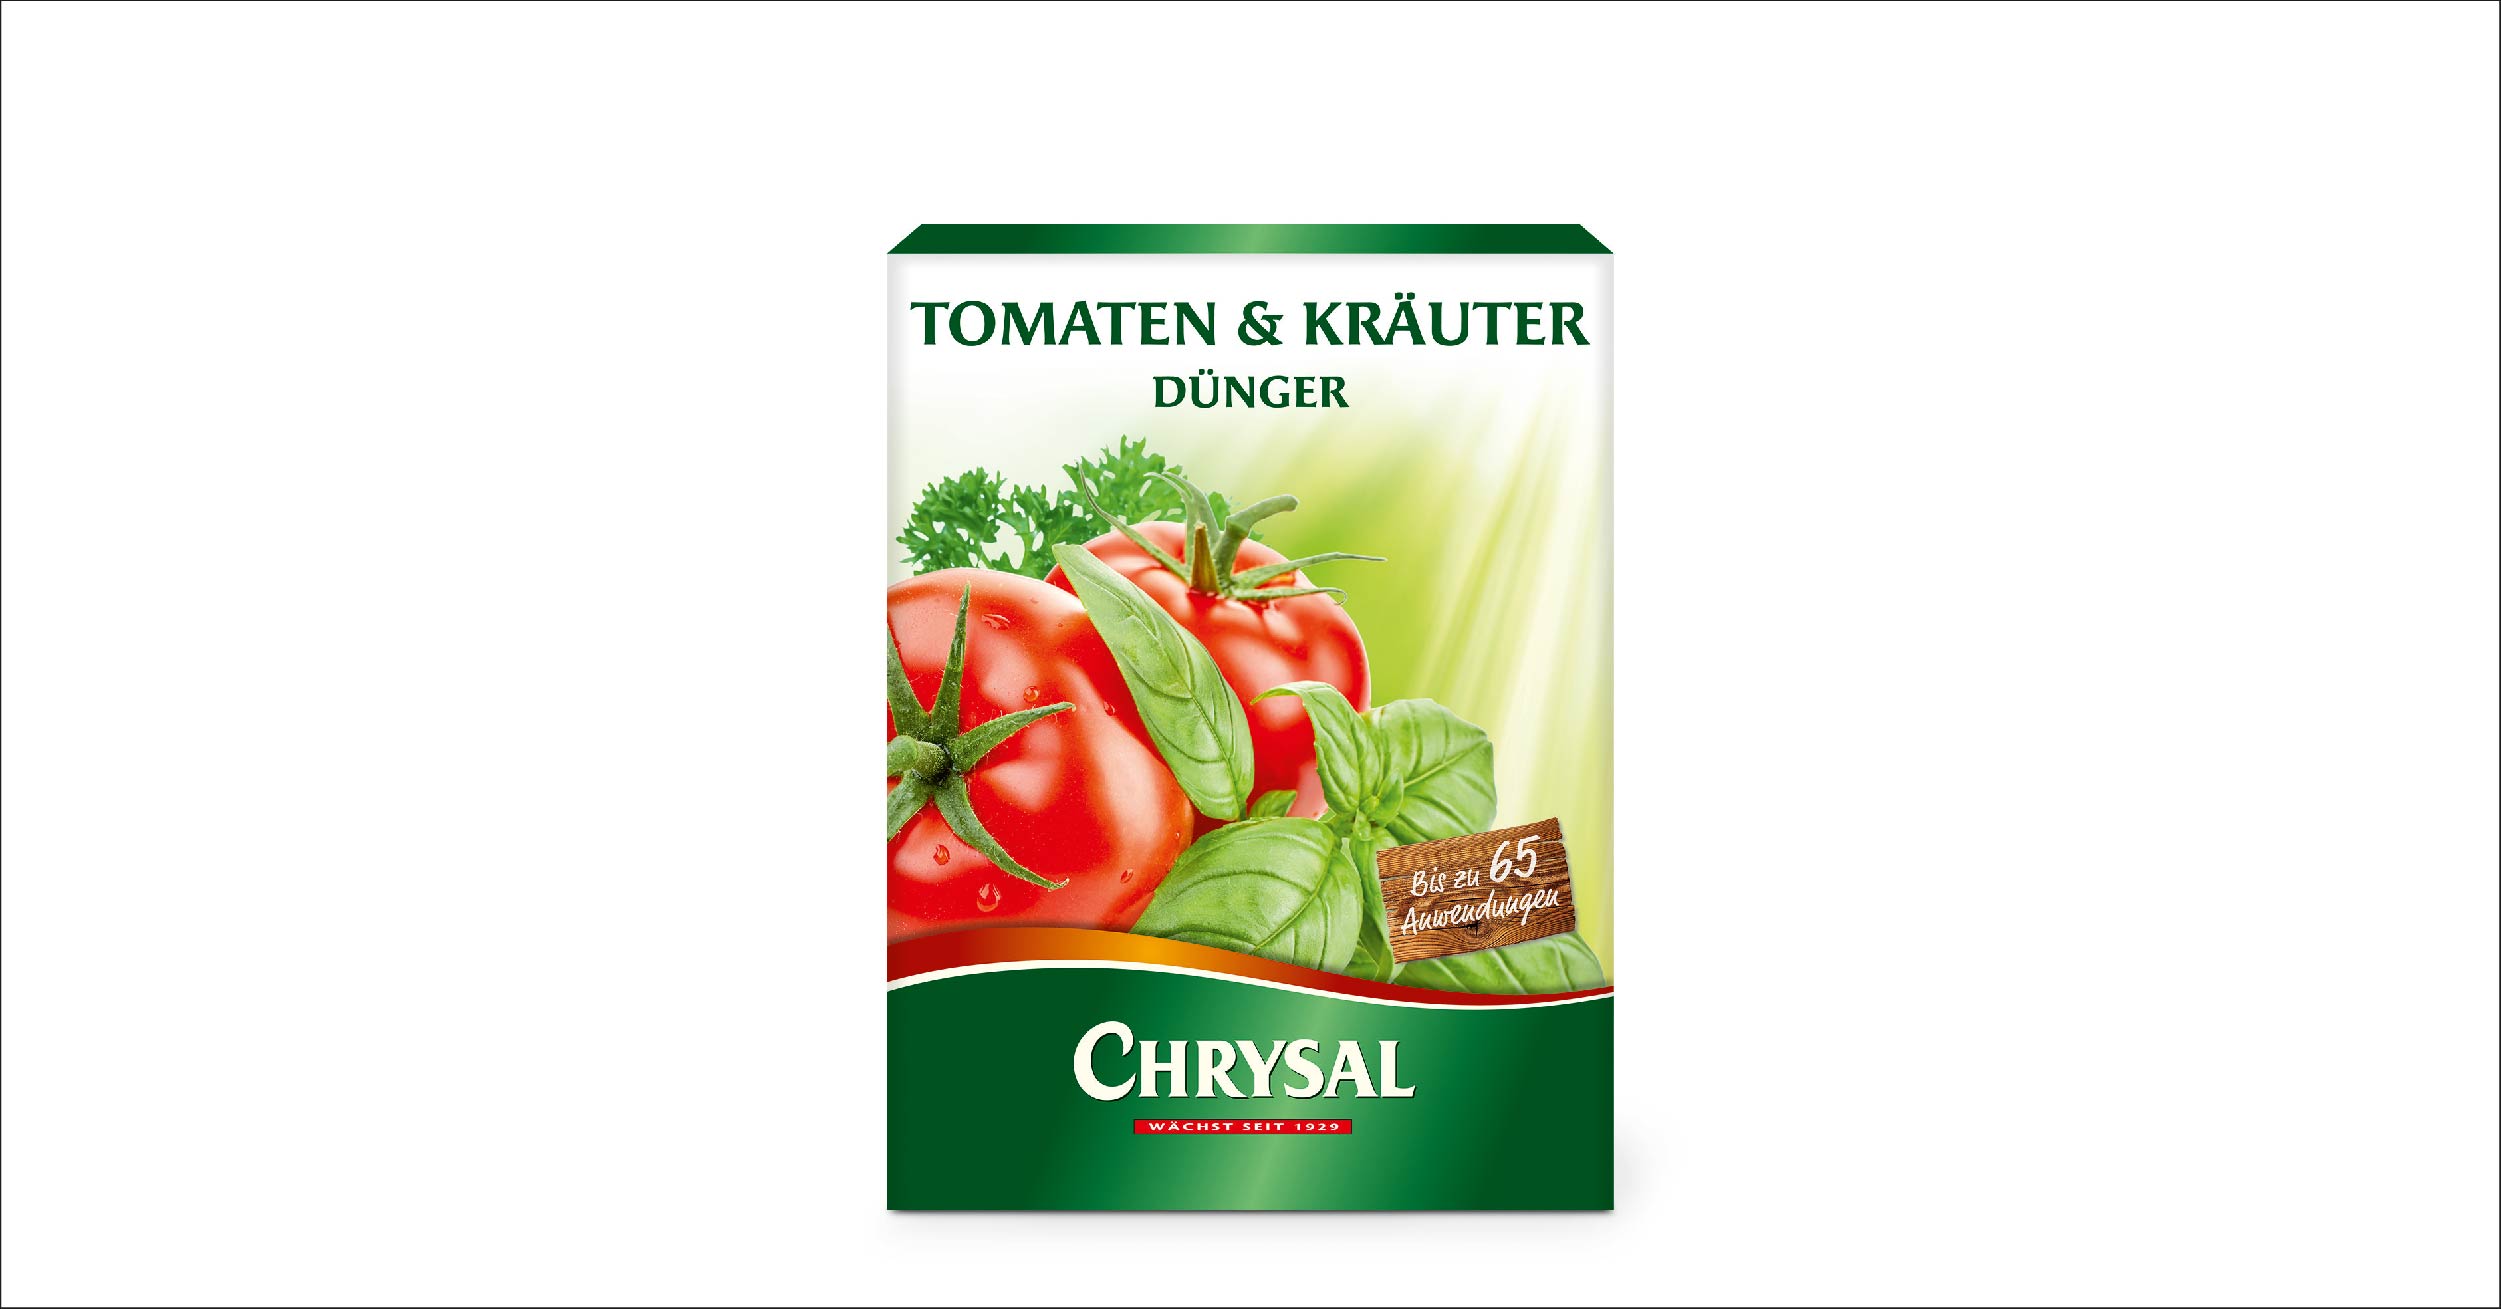 Chrysal Tomaten & Kräuter Dünger